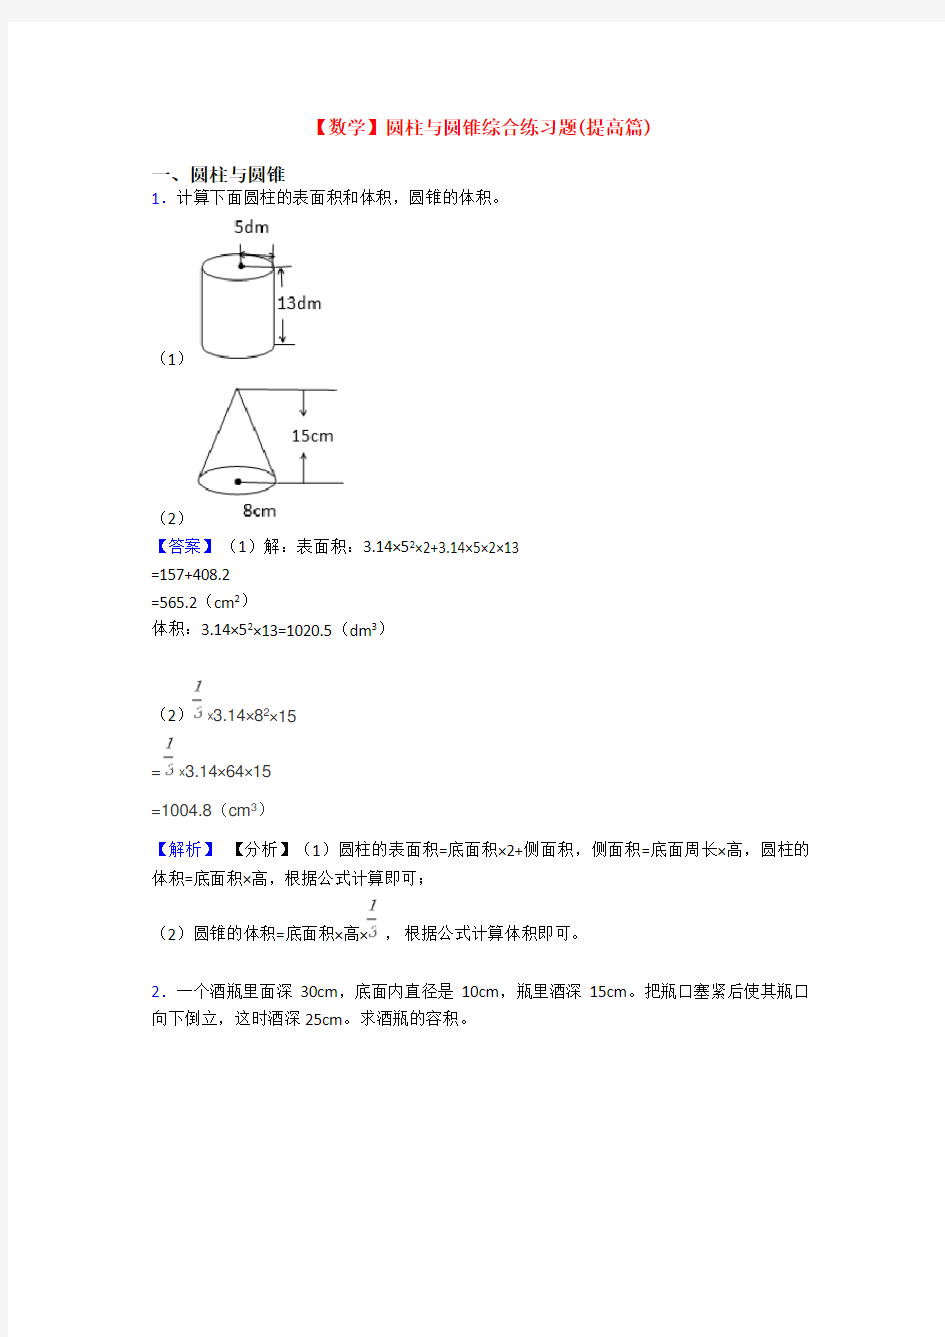 【数学】圆柱与圆锥综合练习题(提高篇)